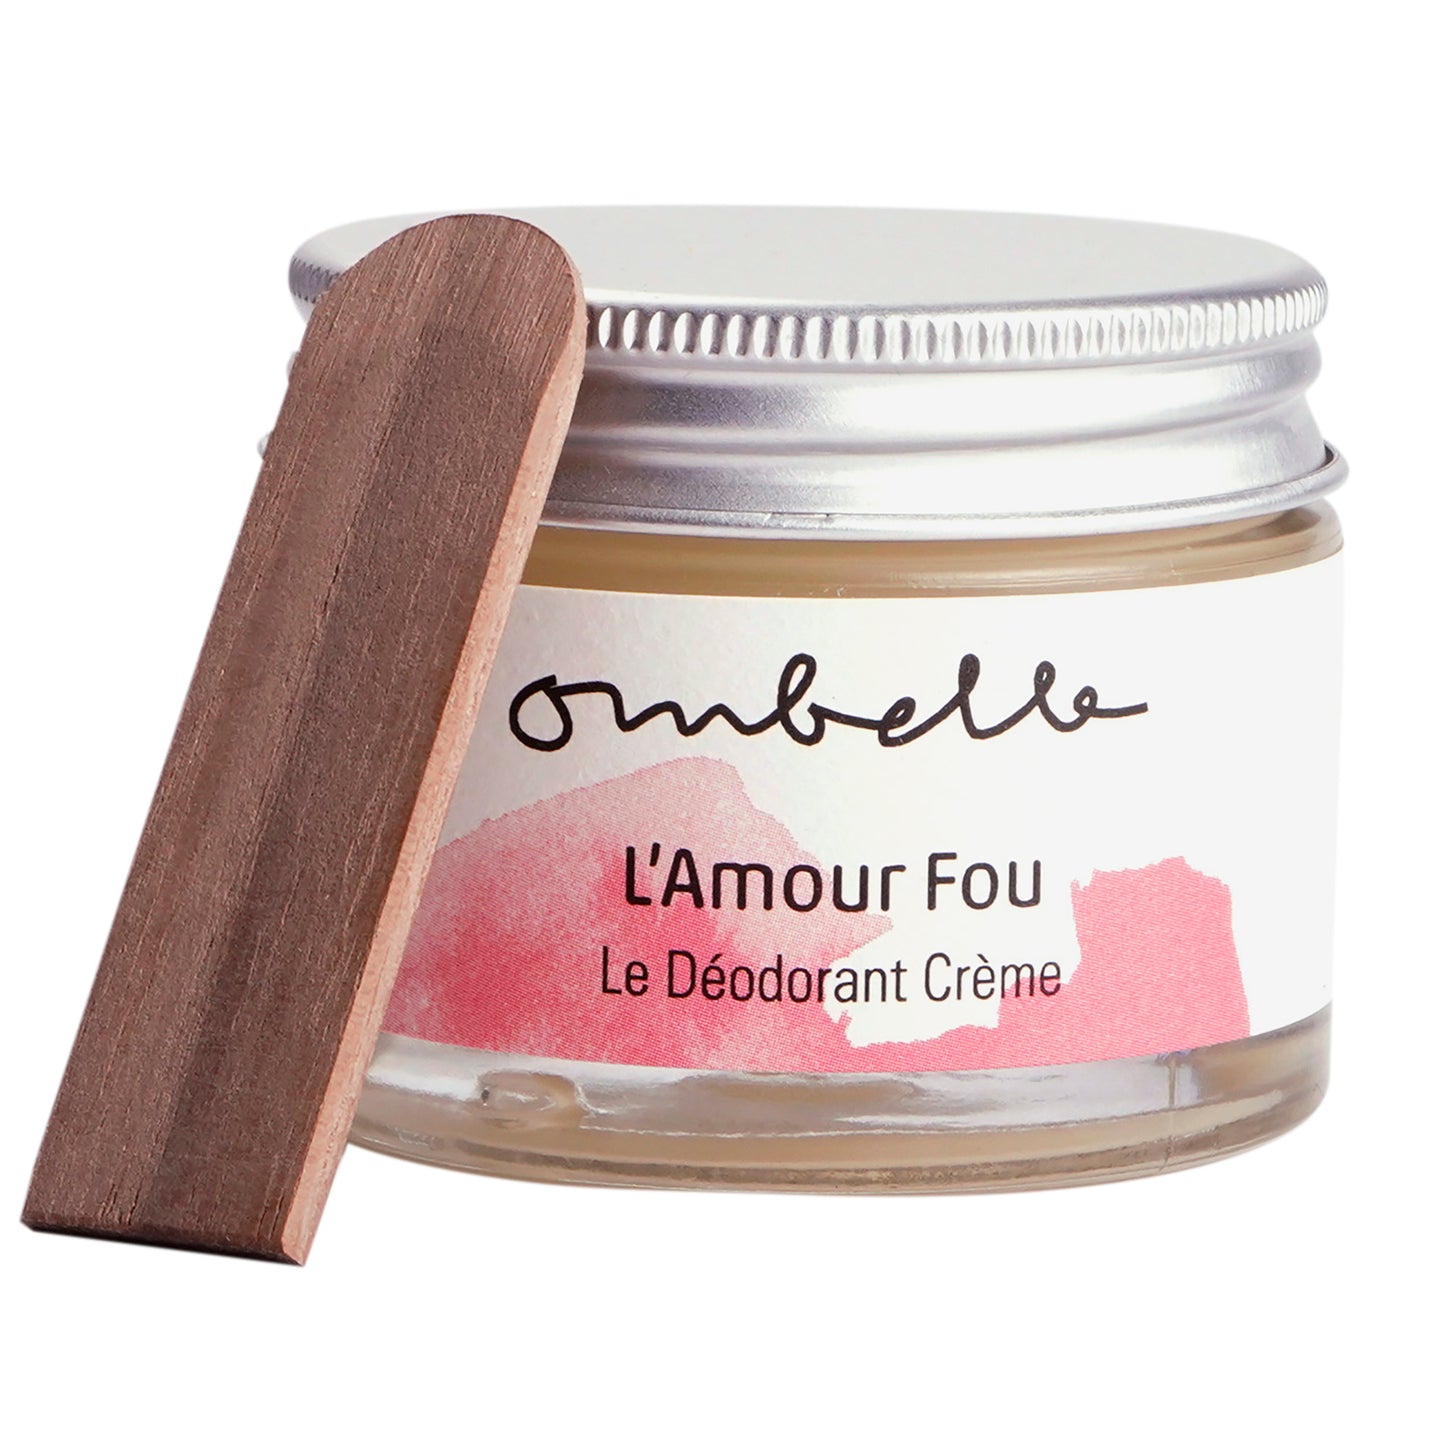 Ombelle L’Amour Fou 35g Bio Deocreme im Glastiegel mit Metalldeckel und Holzspatel Shea Butter unraffiniert Fair Trade ohne Aluminiumsalze.